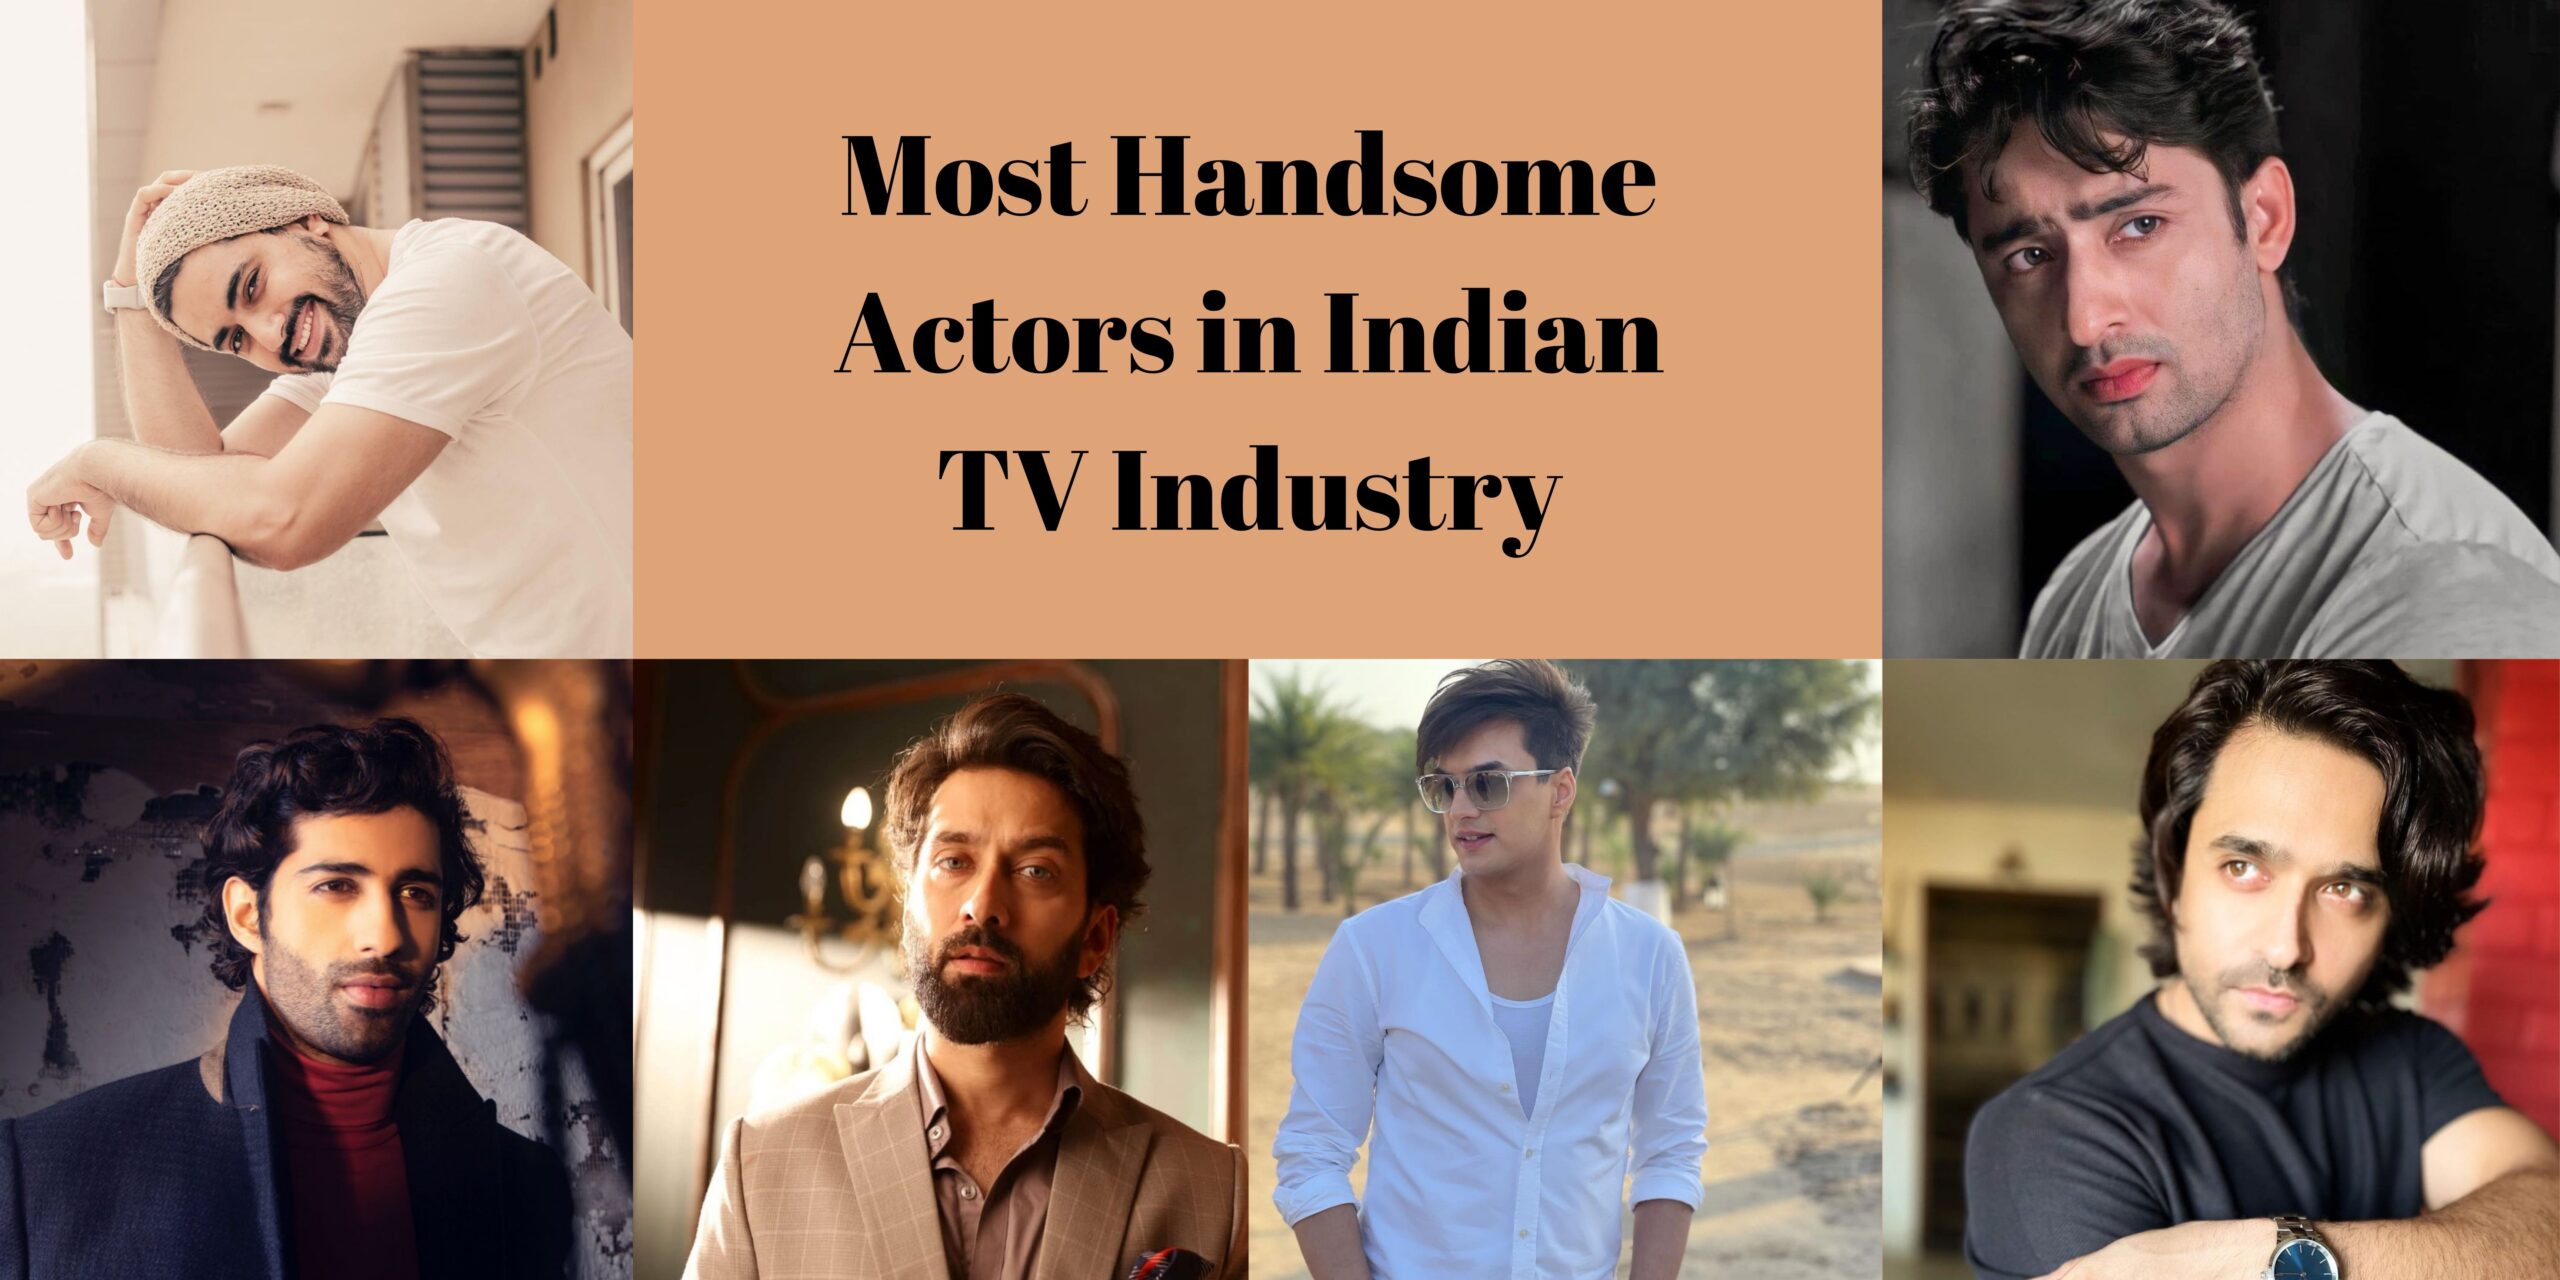 Most Handsome Actors in Indian TV Industry